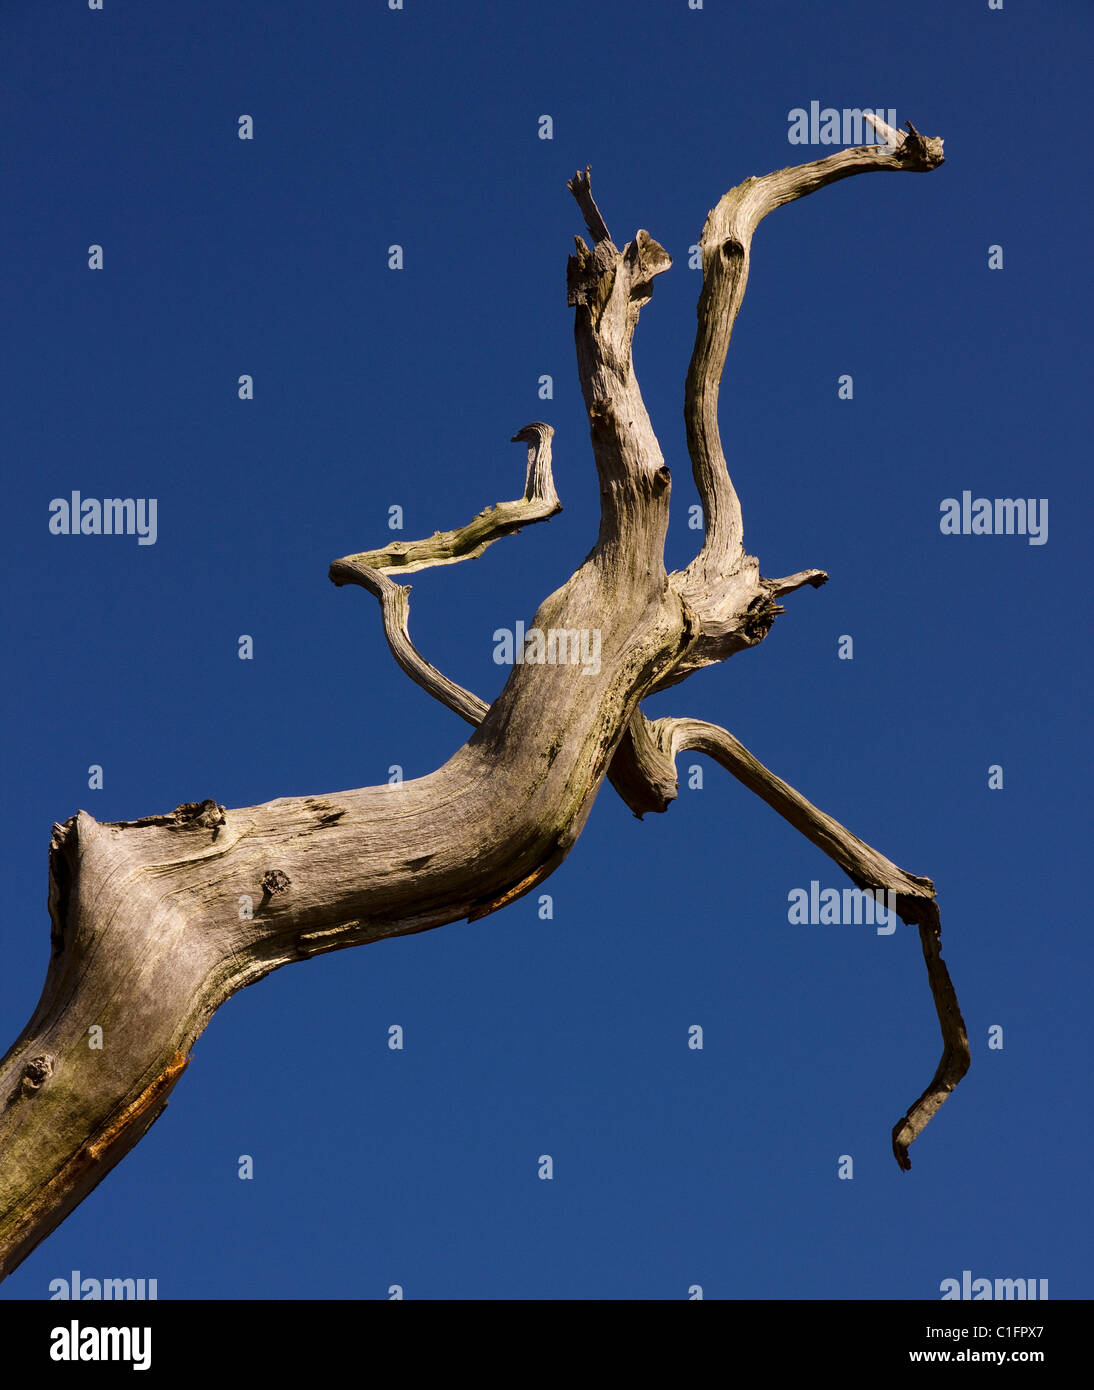 Rama de árbol muerto iluminadas contra el cielo azul profundo Foto de stock